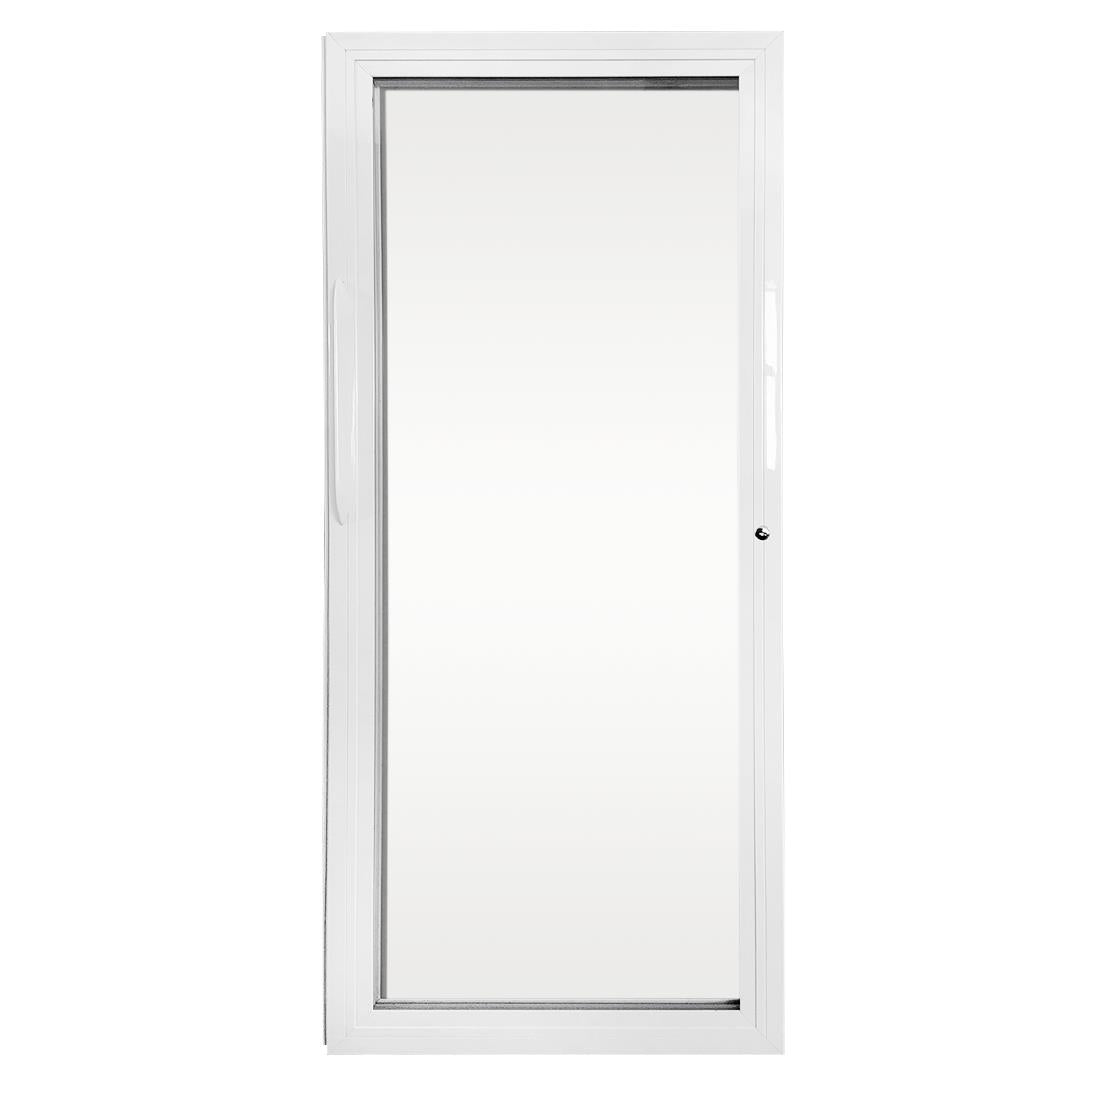 AK869 Polar Complete Glass Door Left JD Catering Equipment Solutions Ltd